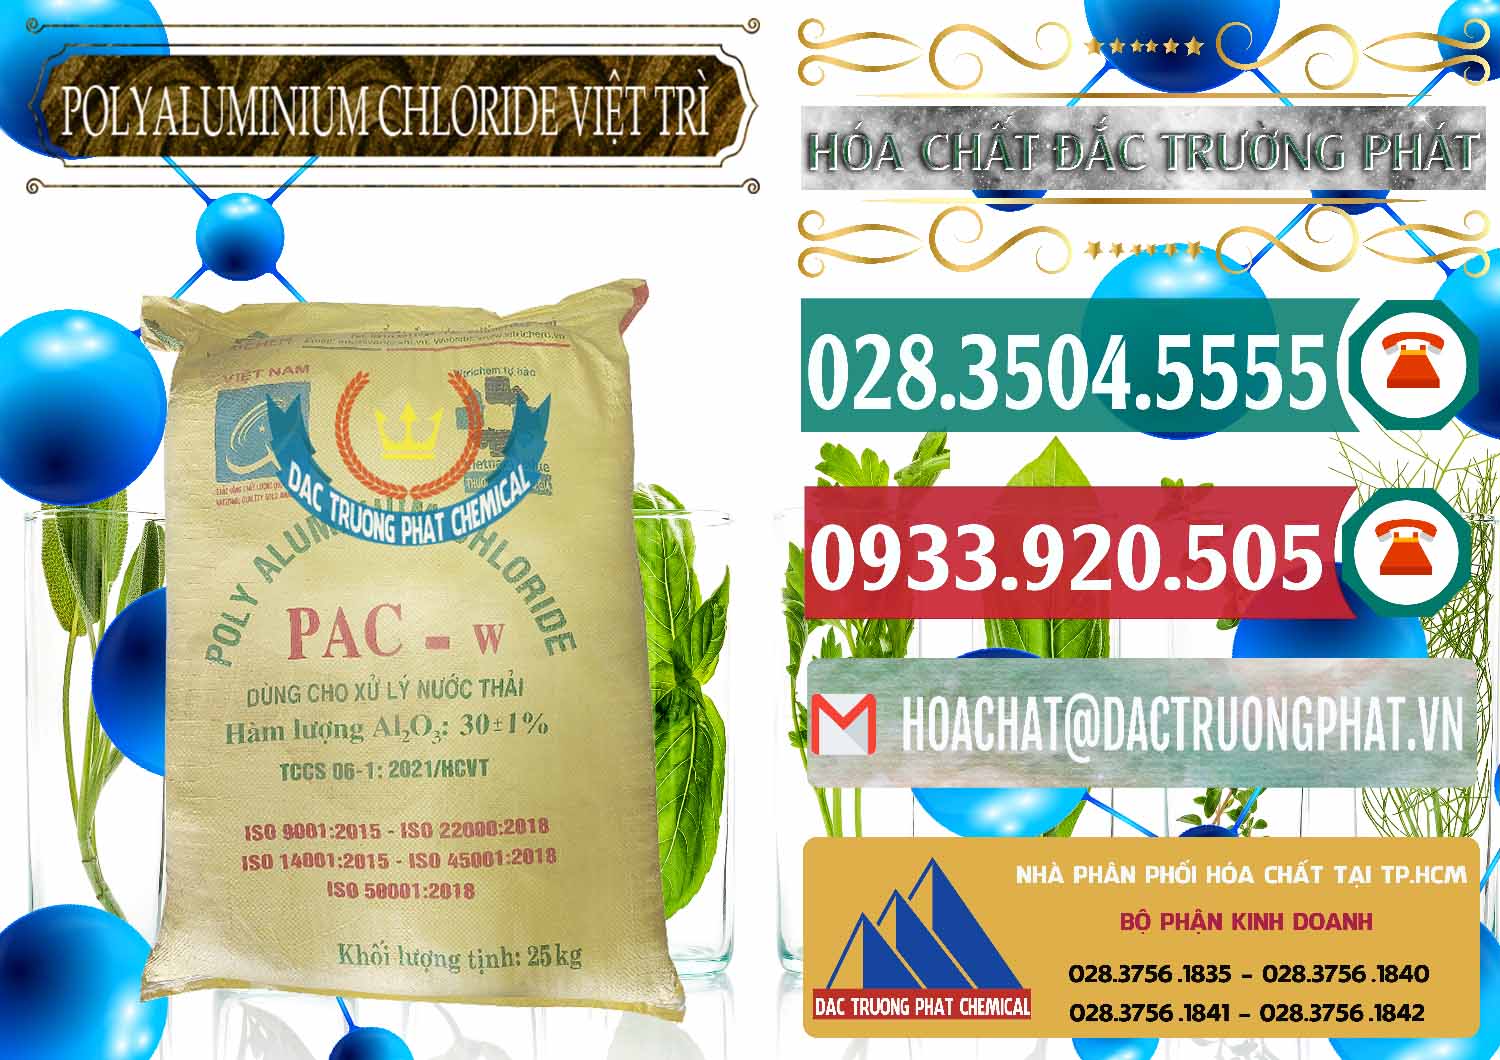 Nơi chuyên kinh doanh ( phân phối ) PAC - Polyaluminium Chloride Việt Trì Việt Nam - 0487 - Chuyên bán & phân phối hóa chất tại TP.HCM - muabanhoachat.vn